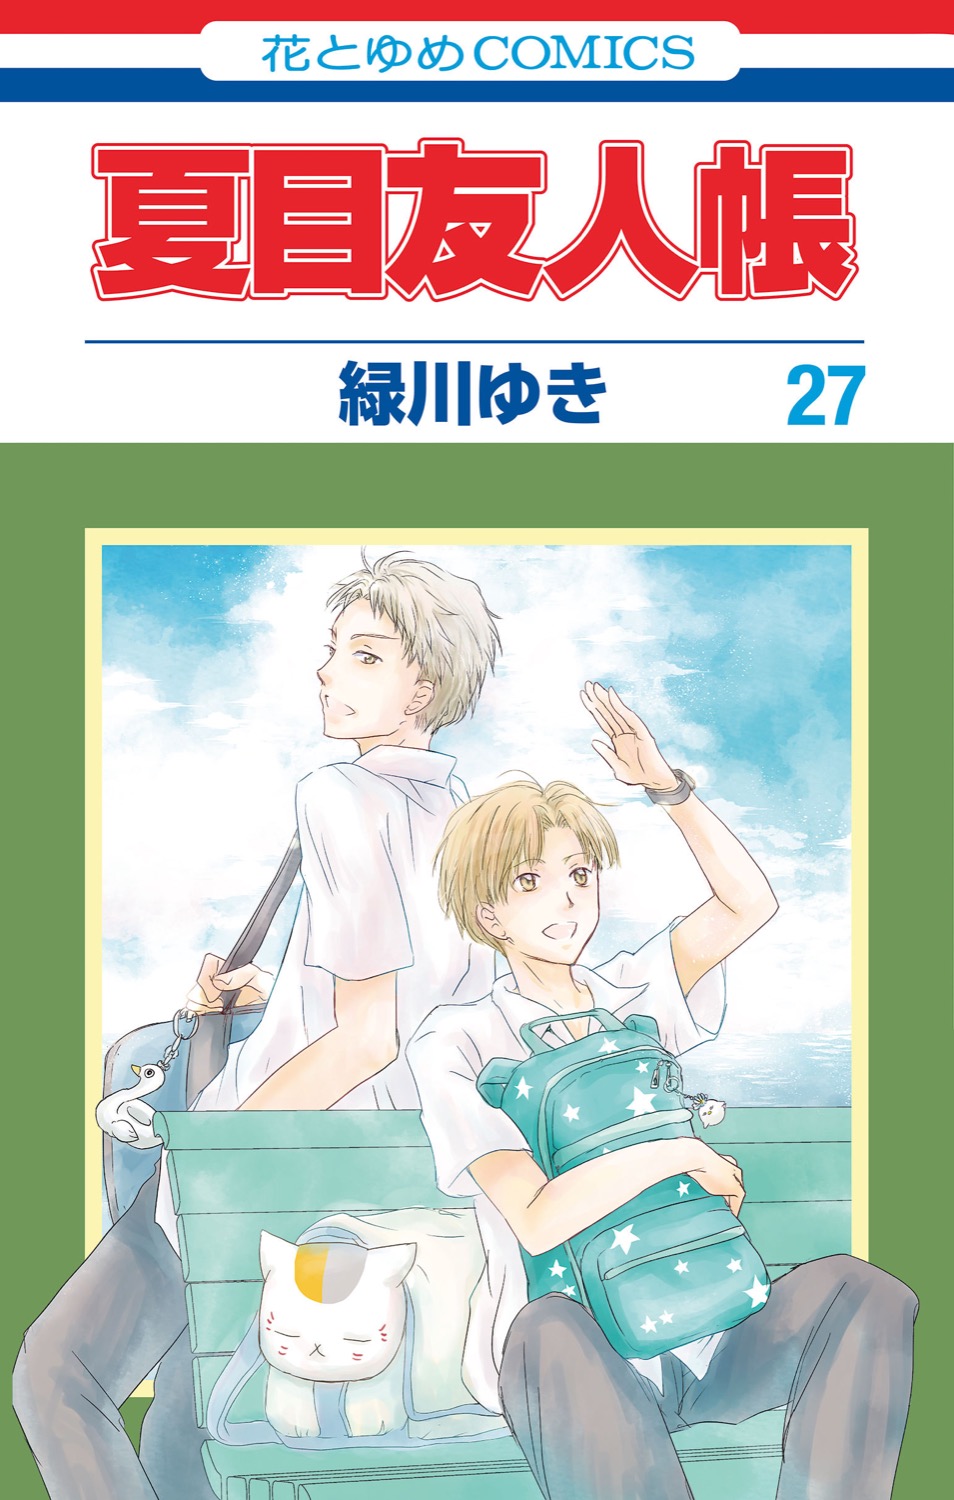 夏目友人帳 第27巻 9月3日にフィギュア付き特装版と同時発売